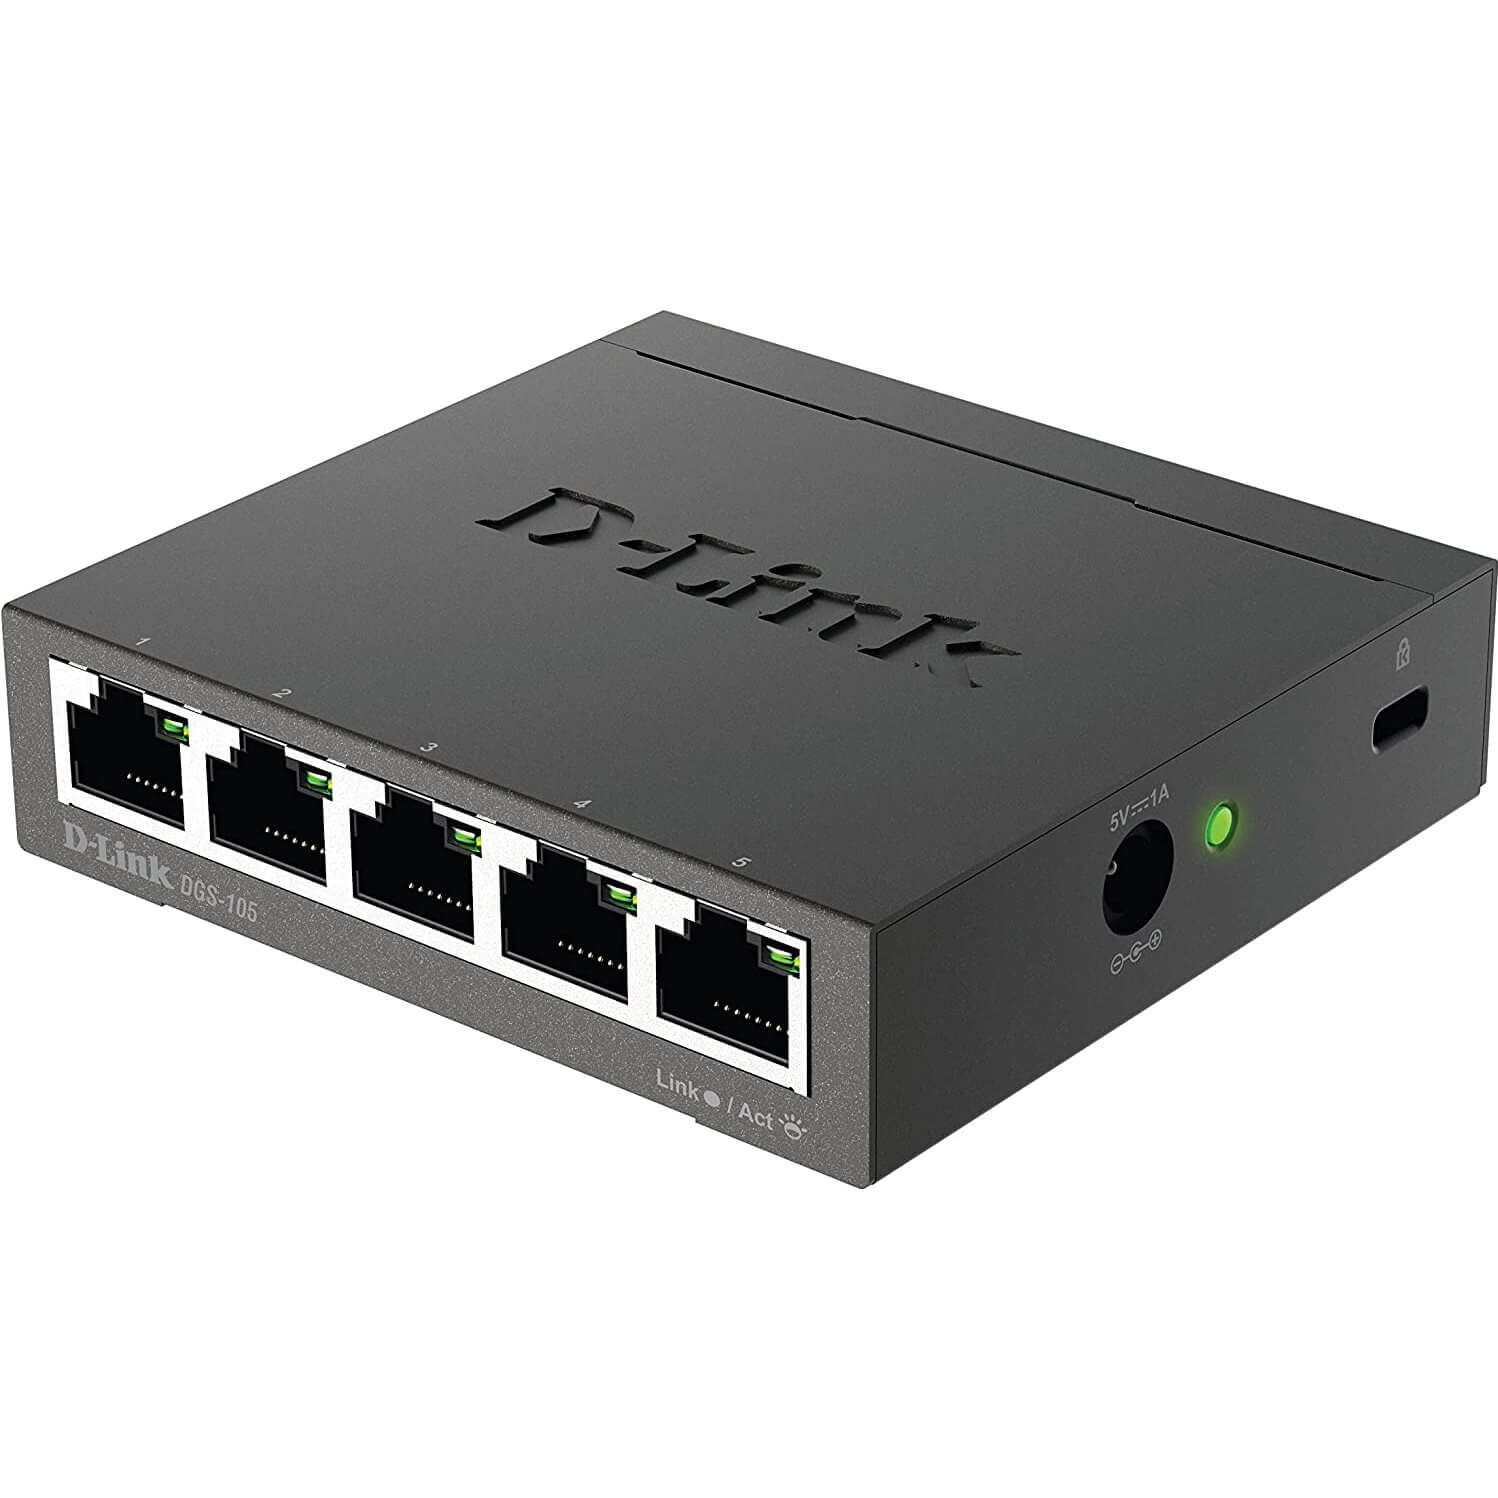 Switch Desktop 5 Ports Giga Botier+Connect. Mtal DGS-105